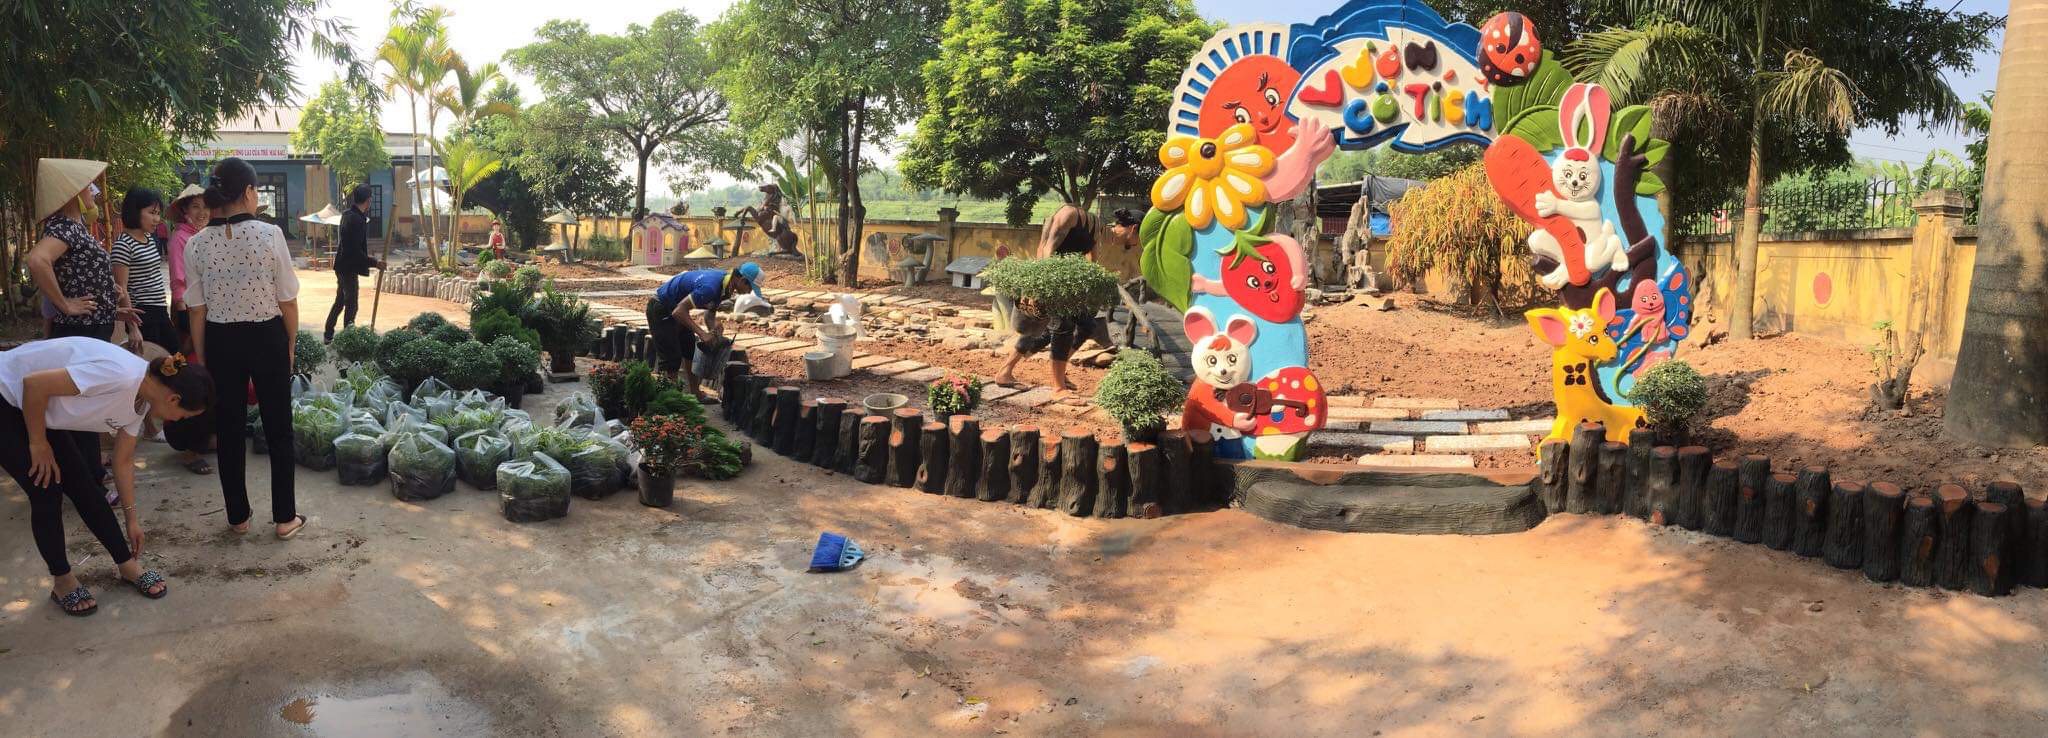 Vườn cổ tích- Trường Mầm non Phú Thịnh